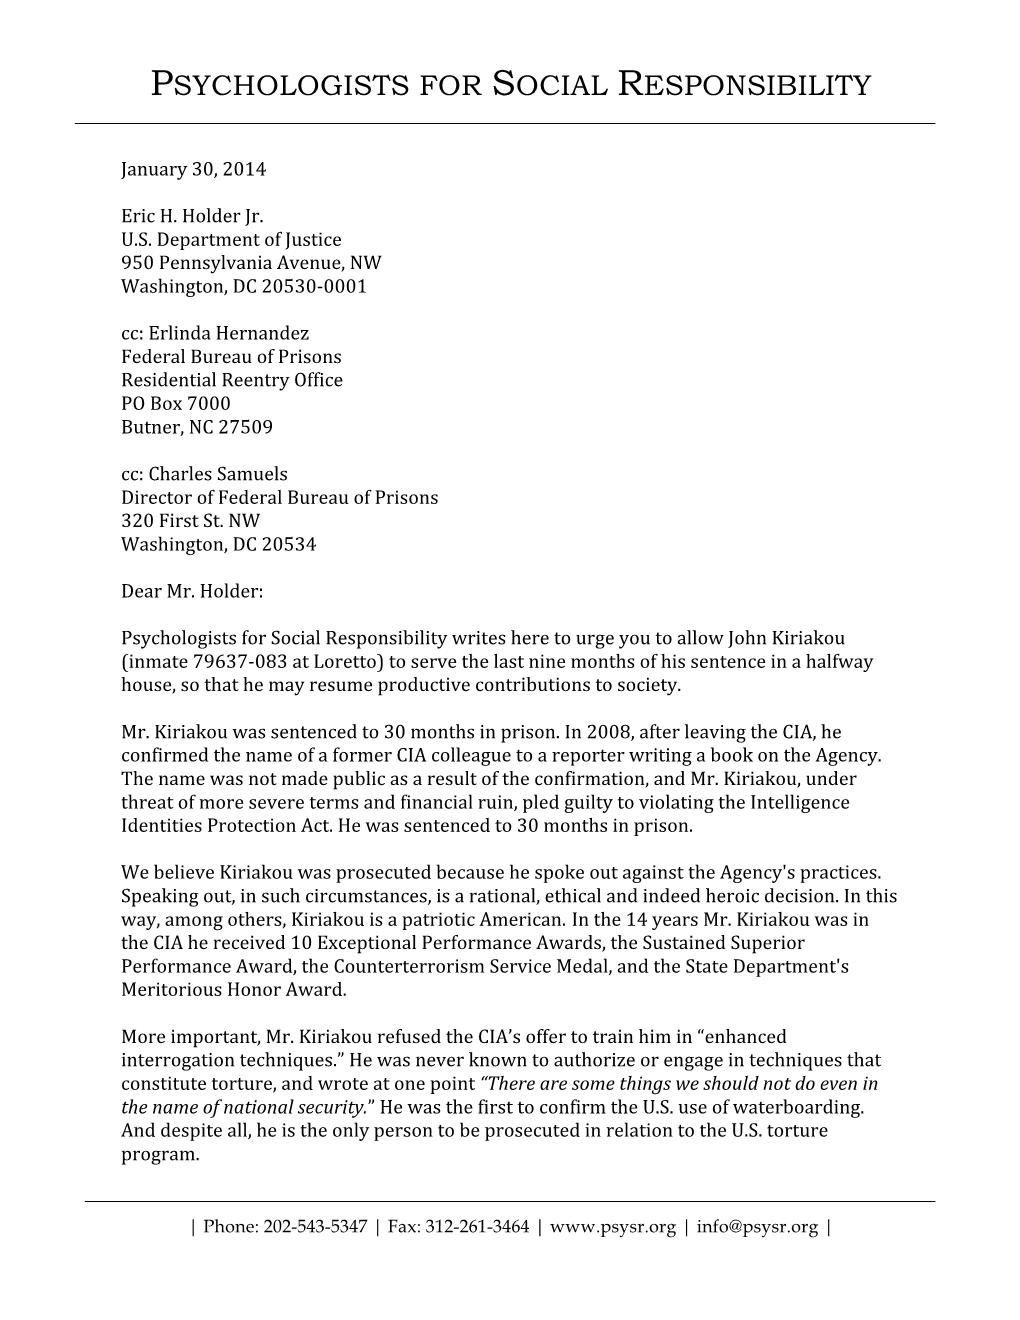 Psysr Sends Letter of Support for CIA Whistleblower John Kiriakou